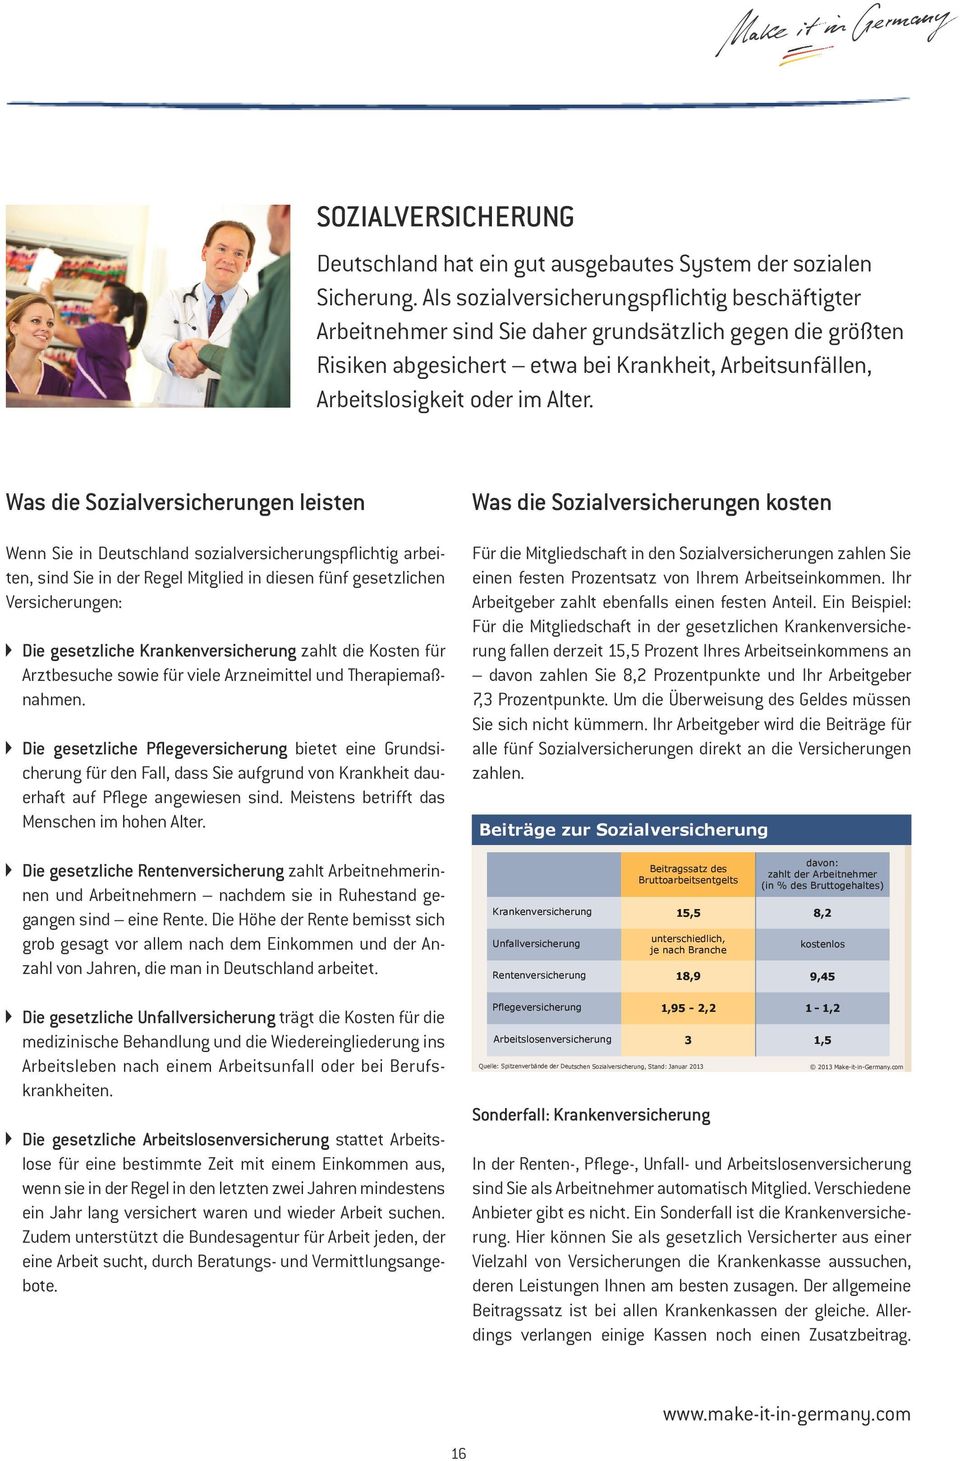 Was die Sozialversicherungen leisten Wenn Sie in Deutschland sozialversicherungspflichtig arbeiten, sind Sie in der Regel Mitglied in diesen fünf gesetzlichen Versicherungen: Die gesetzliche